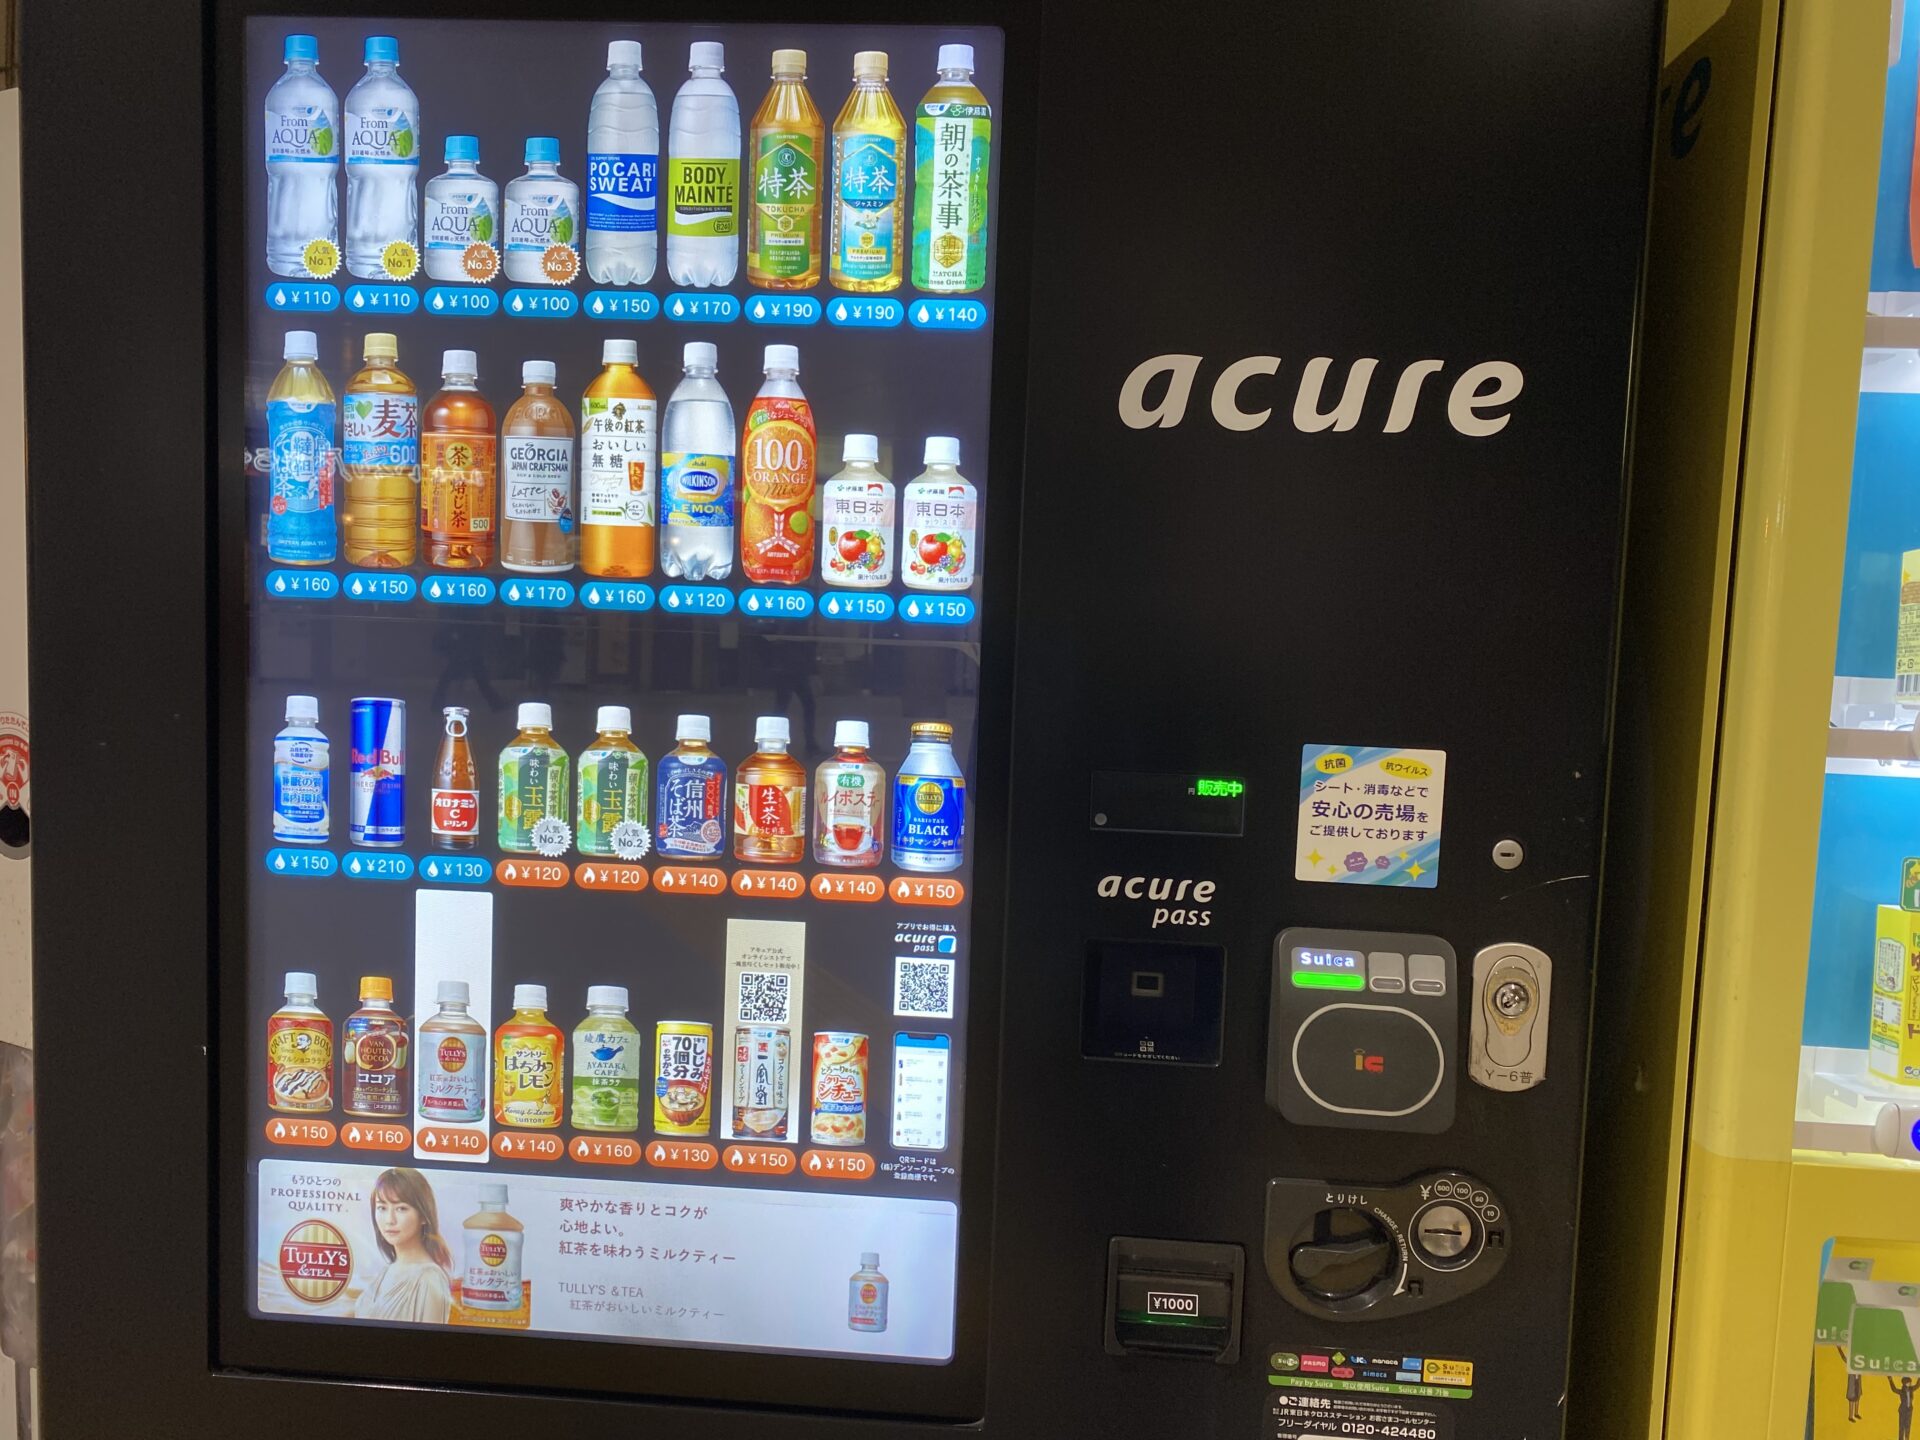 ジェイアールひがしにほんの駅に設置されている自動販売機、あきゅあの写真。ボタンはなく、スマートフォンのようにスクリーンをタッチして商品を購入します